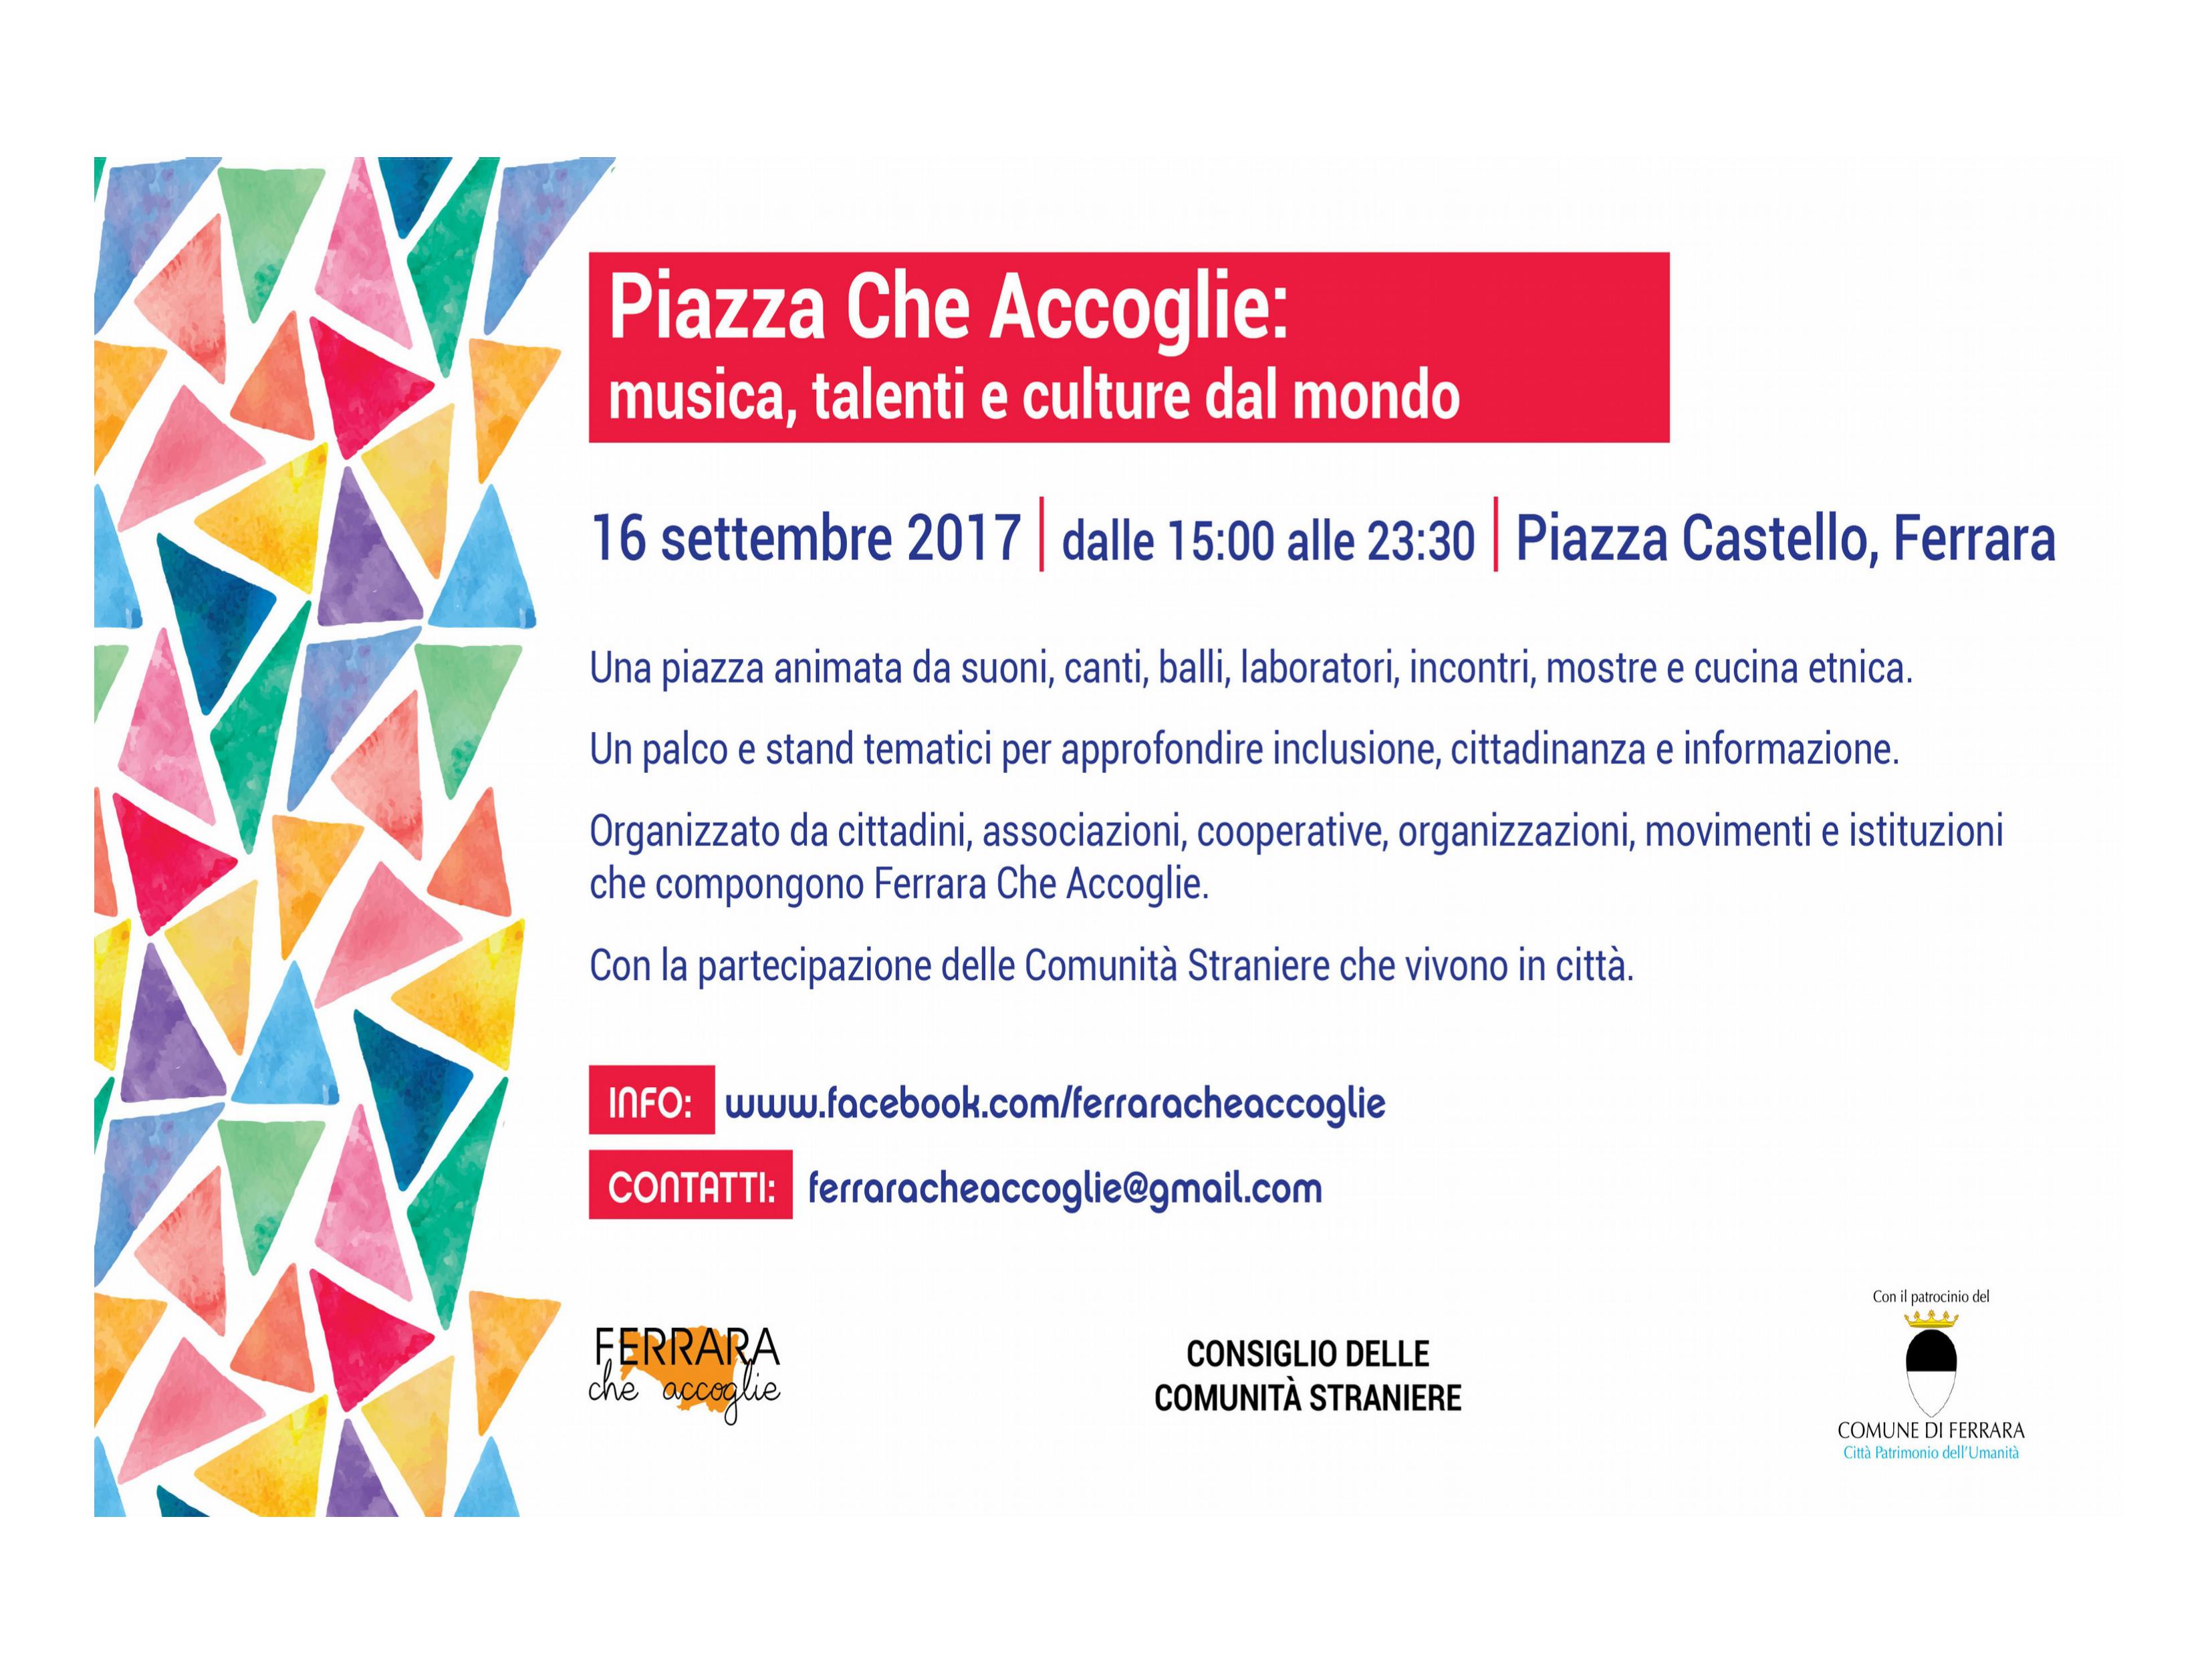 Piazza Che Accoglie: tra musica, talenti e culture dal mondo, sabato 16 settembre Ferrara si apre a una festa di cittadinanza e inclusione